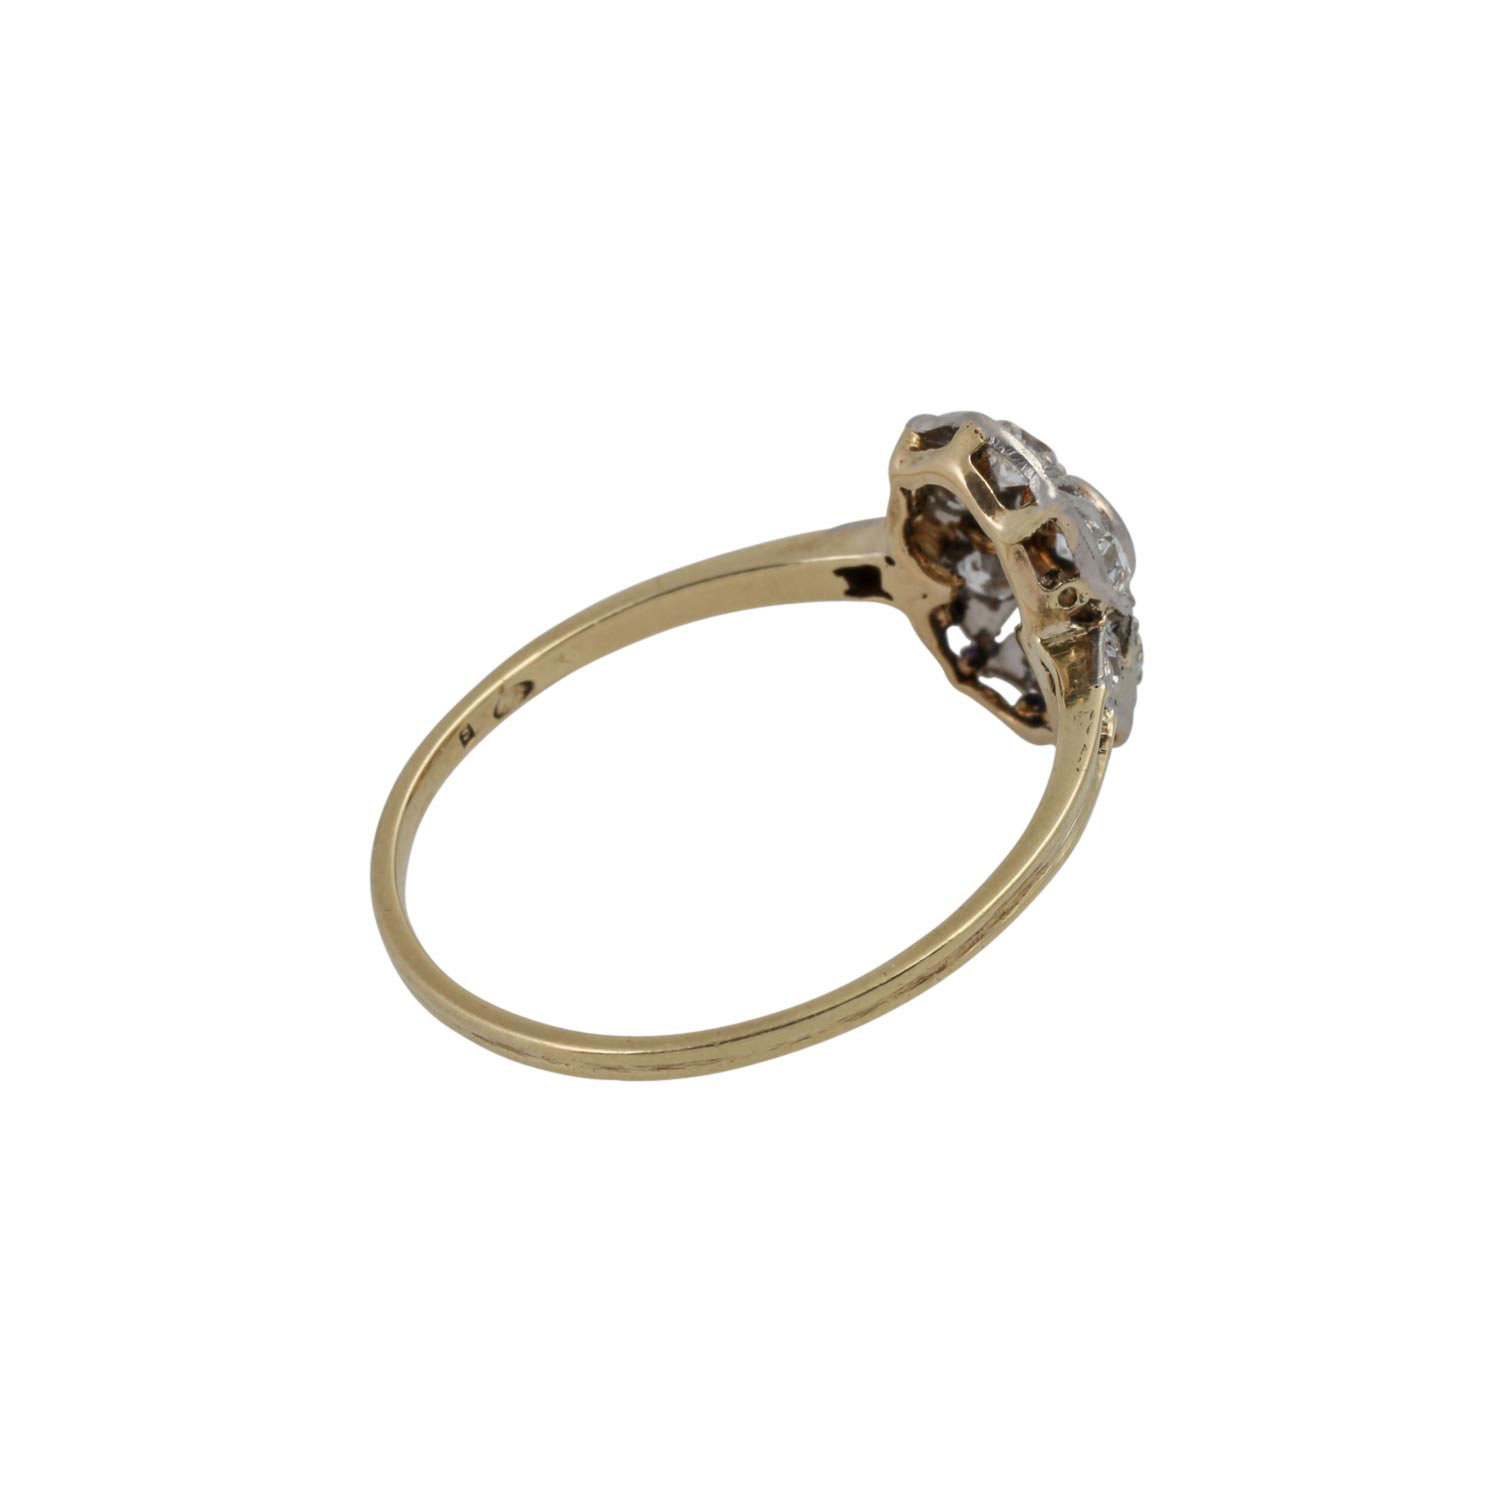 Art Déco zarter Ring mit Altschliffdiamanten von zus. ca. 0,25 ct, - Image 3 of 4